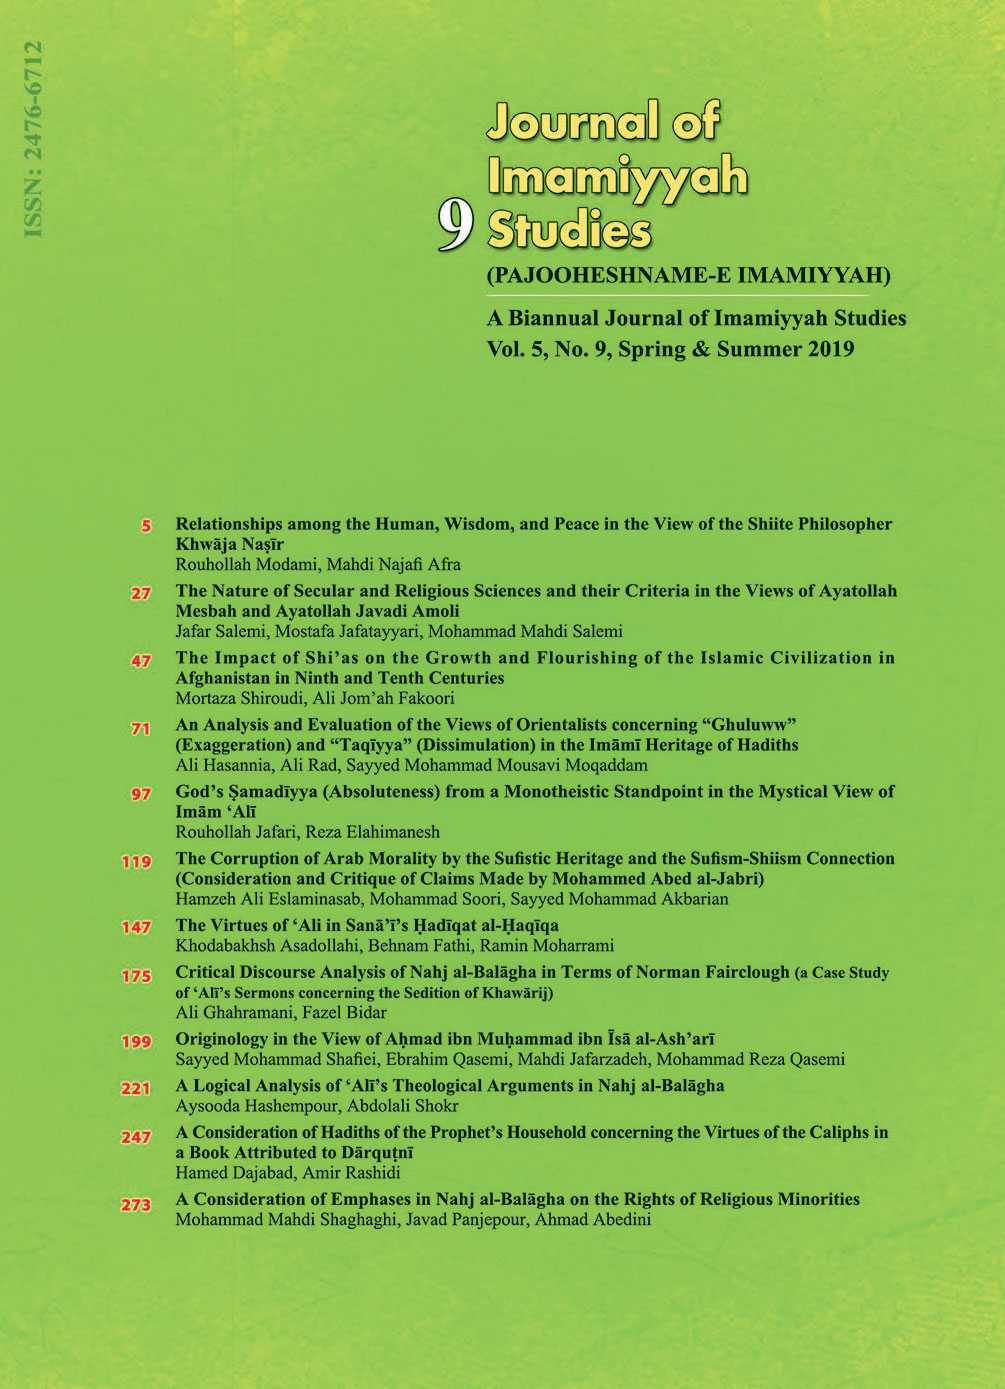 Journal of Imamiyyah Studies